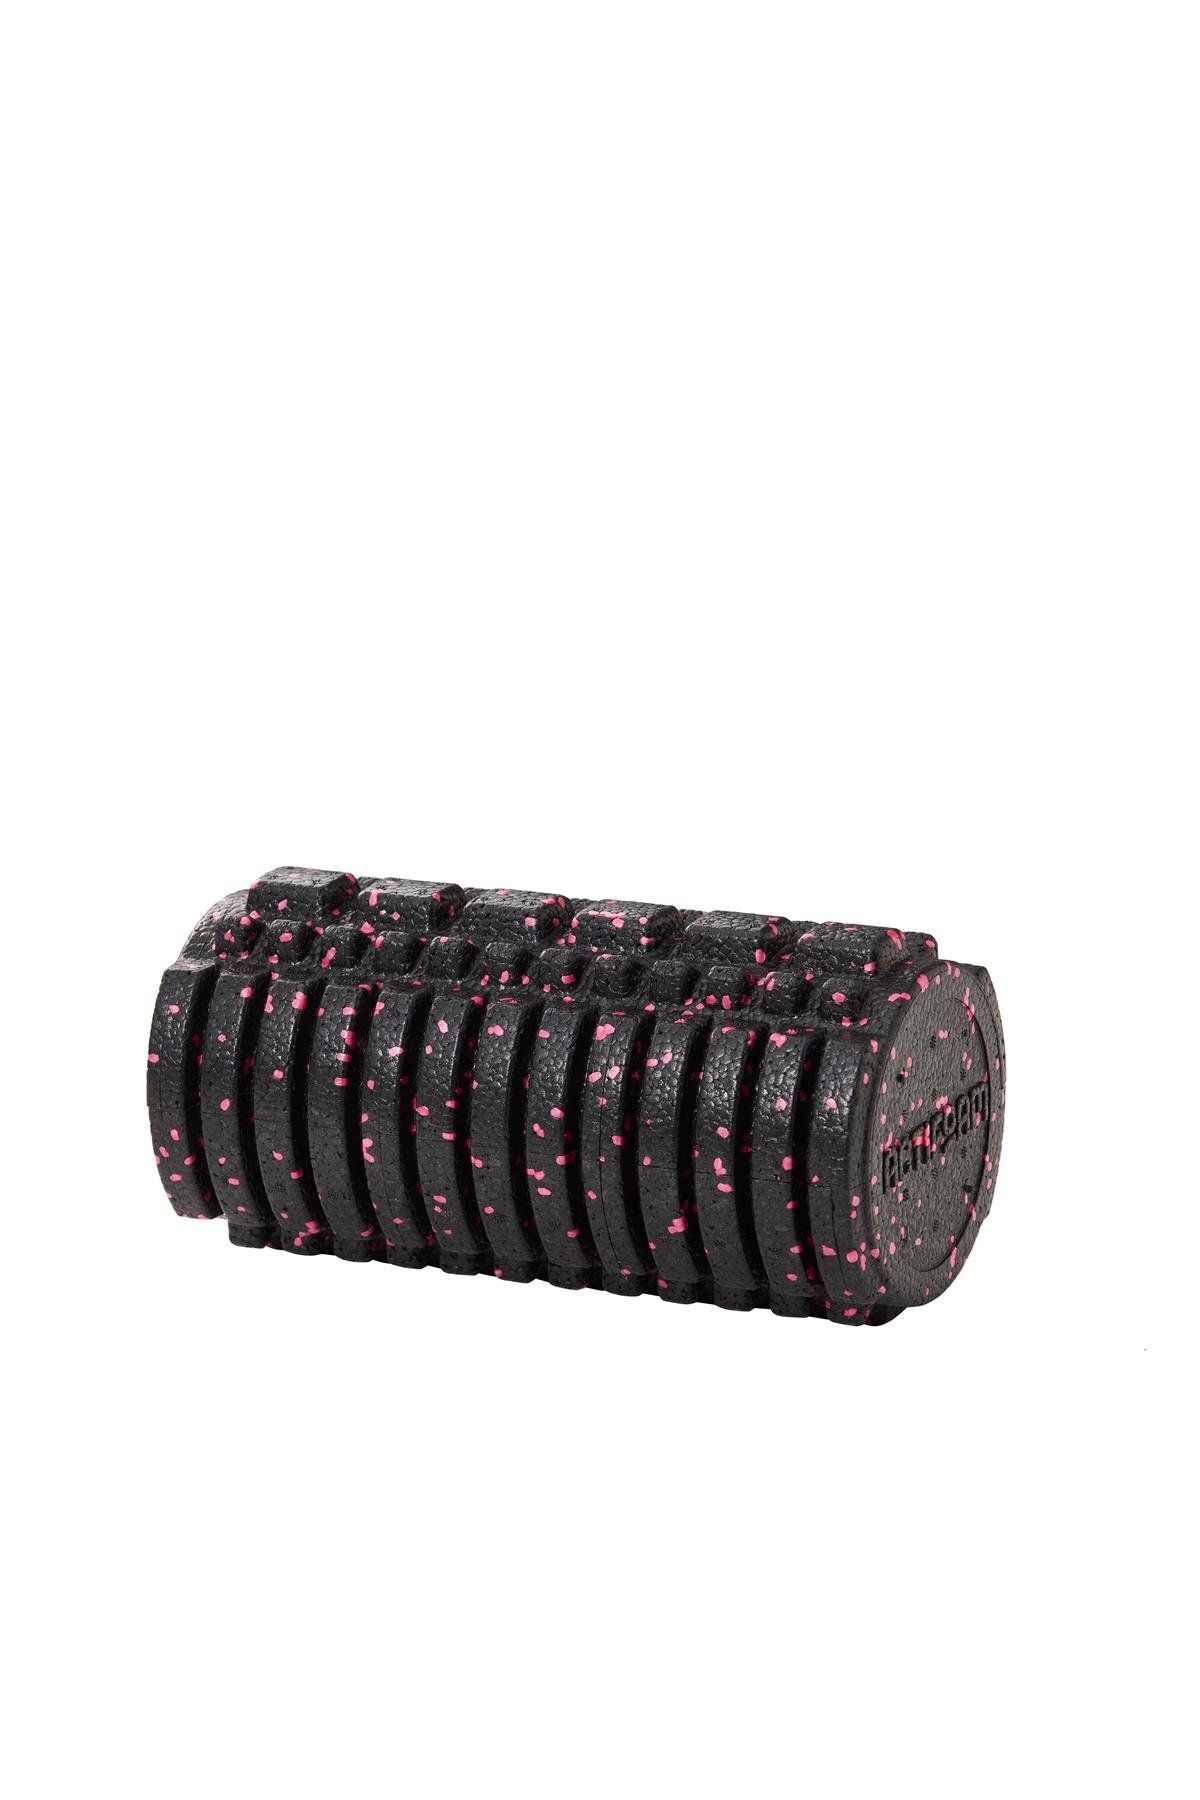 Actifoam Tırtıklı Masaj Rulosu - Trigger Point Foam Roller 30 cm